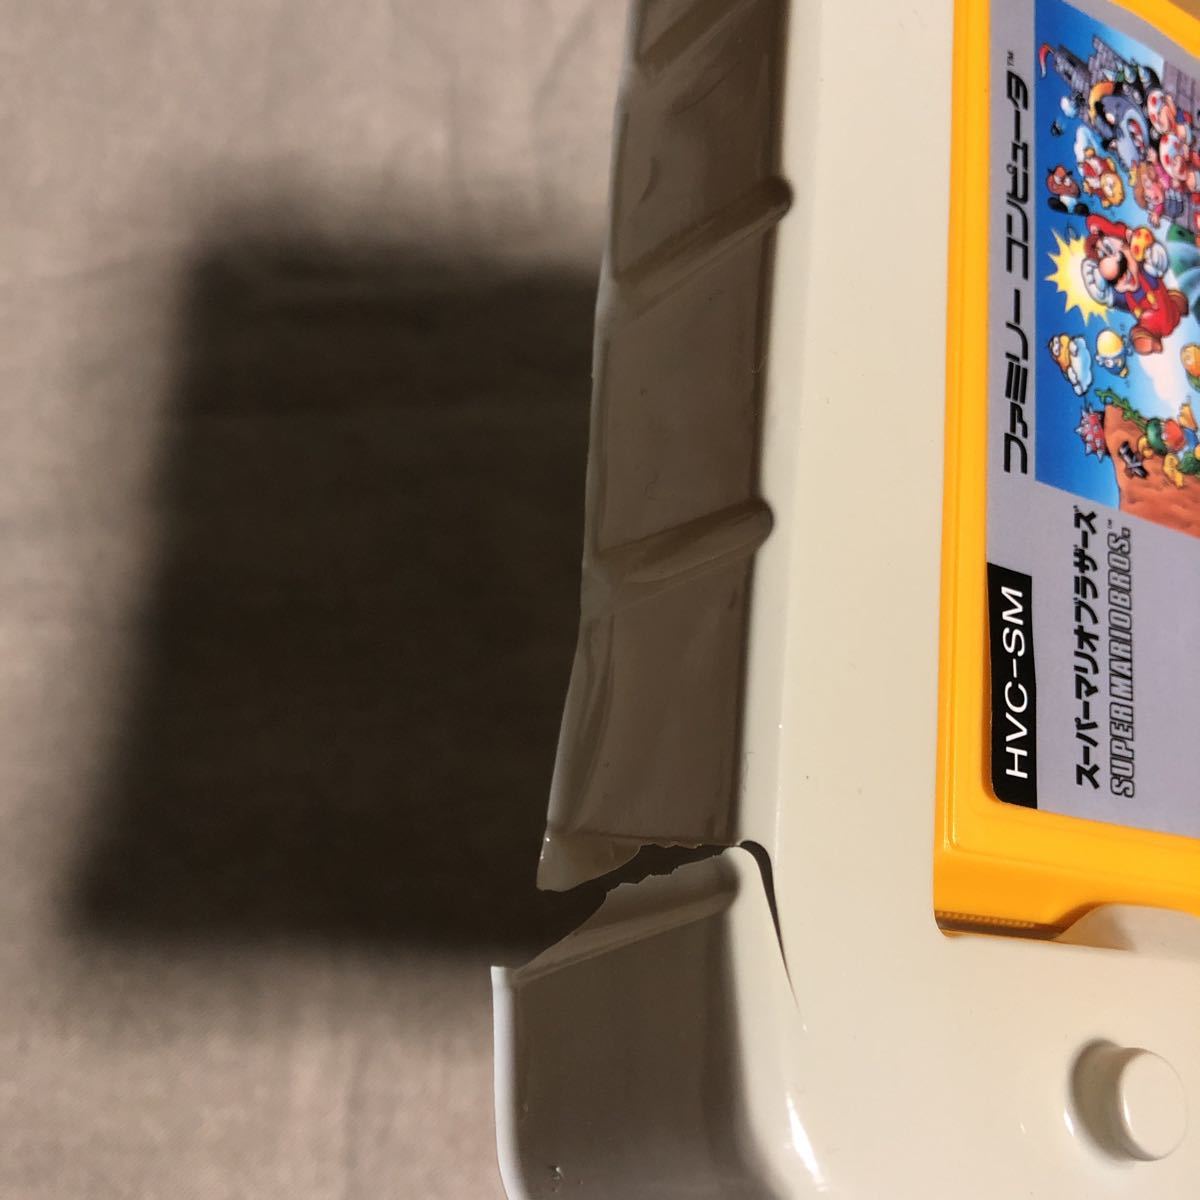  бесплатная доставка * Super Mario Brothers фигурка эмблема in кассета type кейс развлечения специальный подарок 